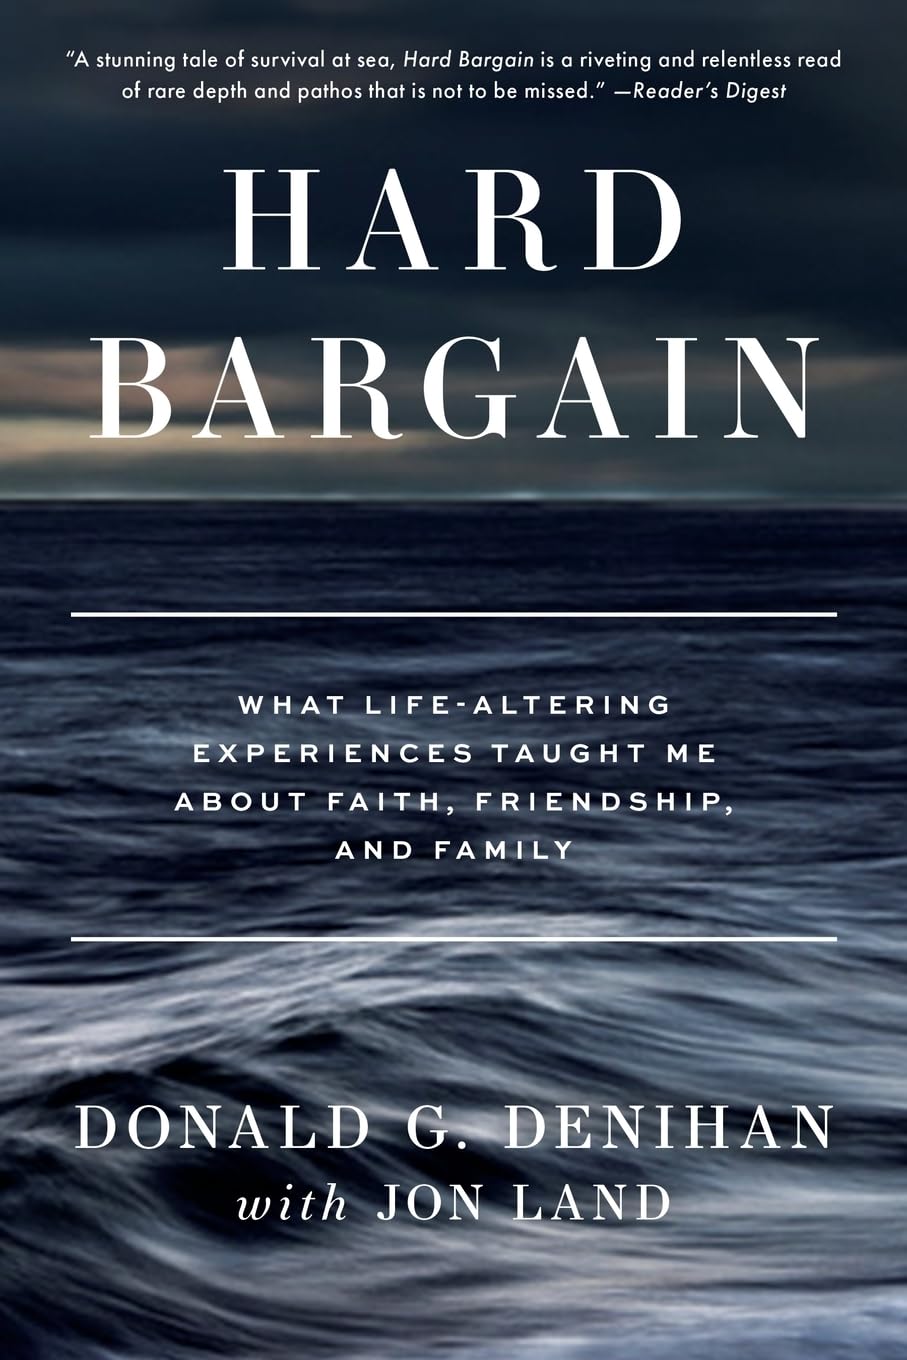 Hard Bargain by Donald G. Denihan with Jon Land